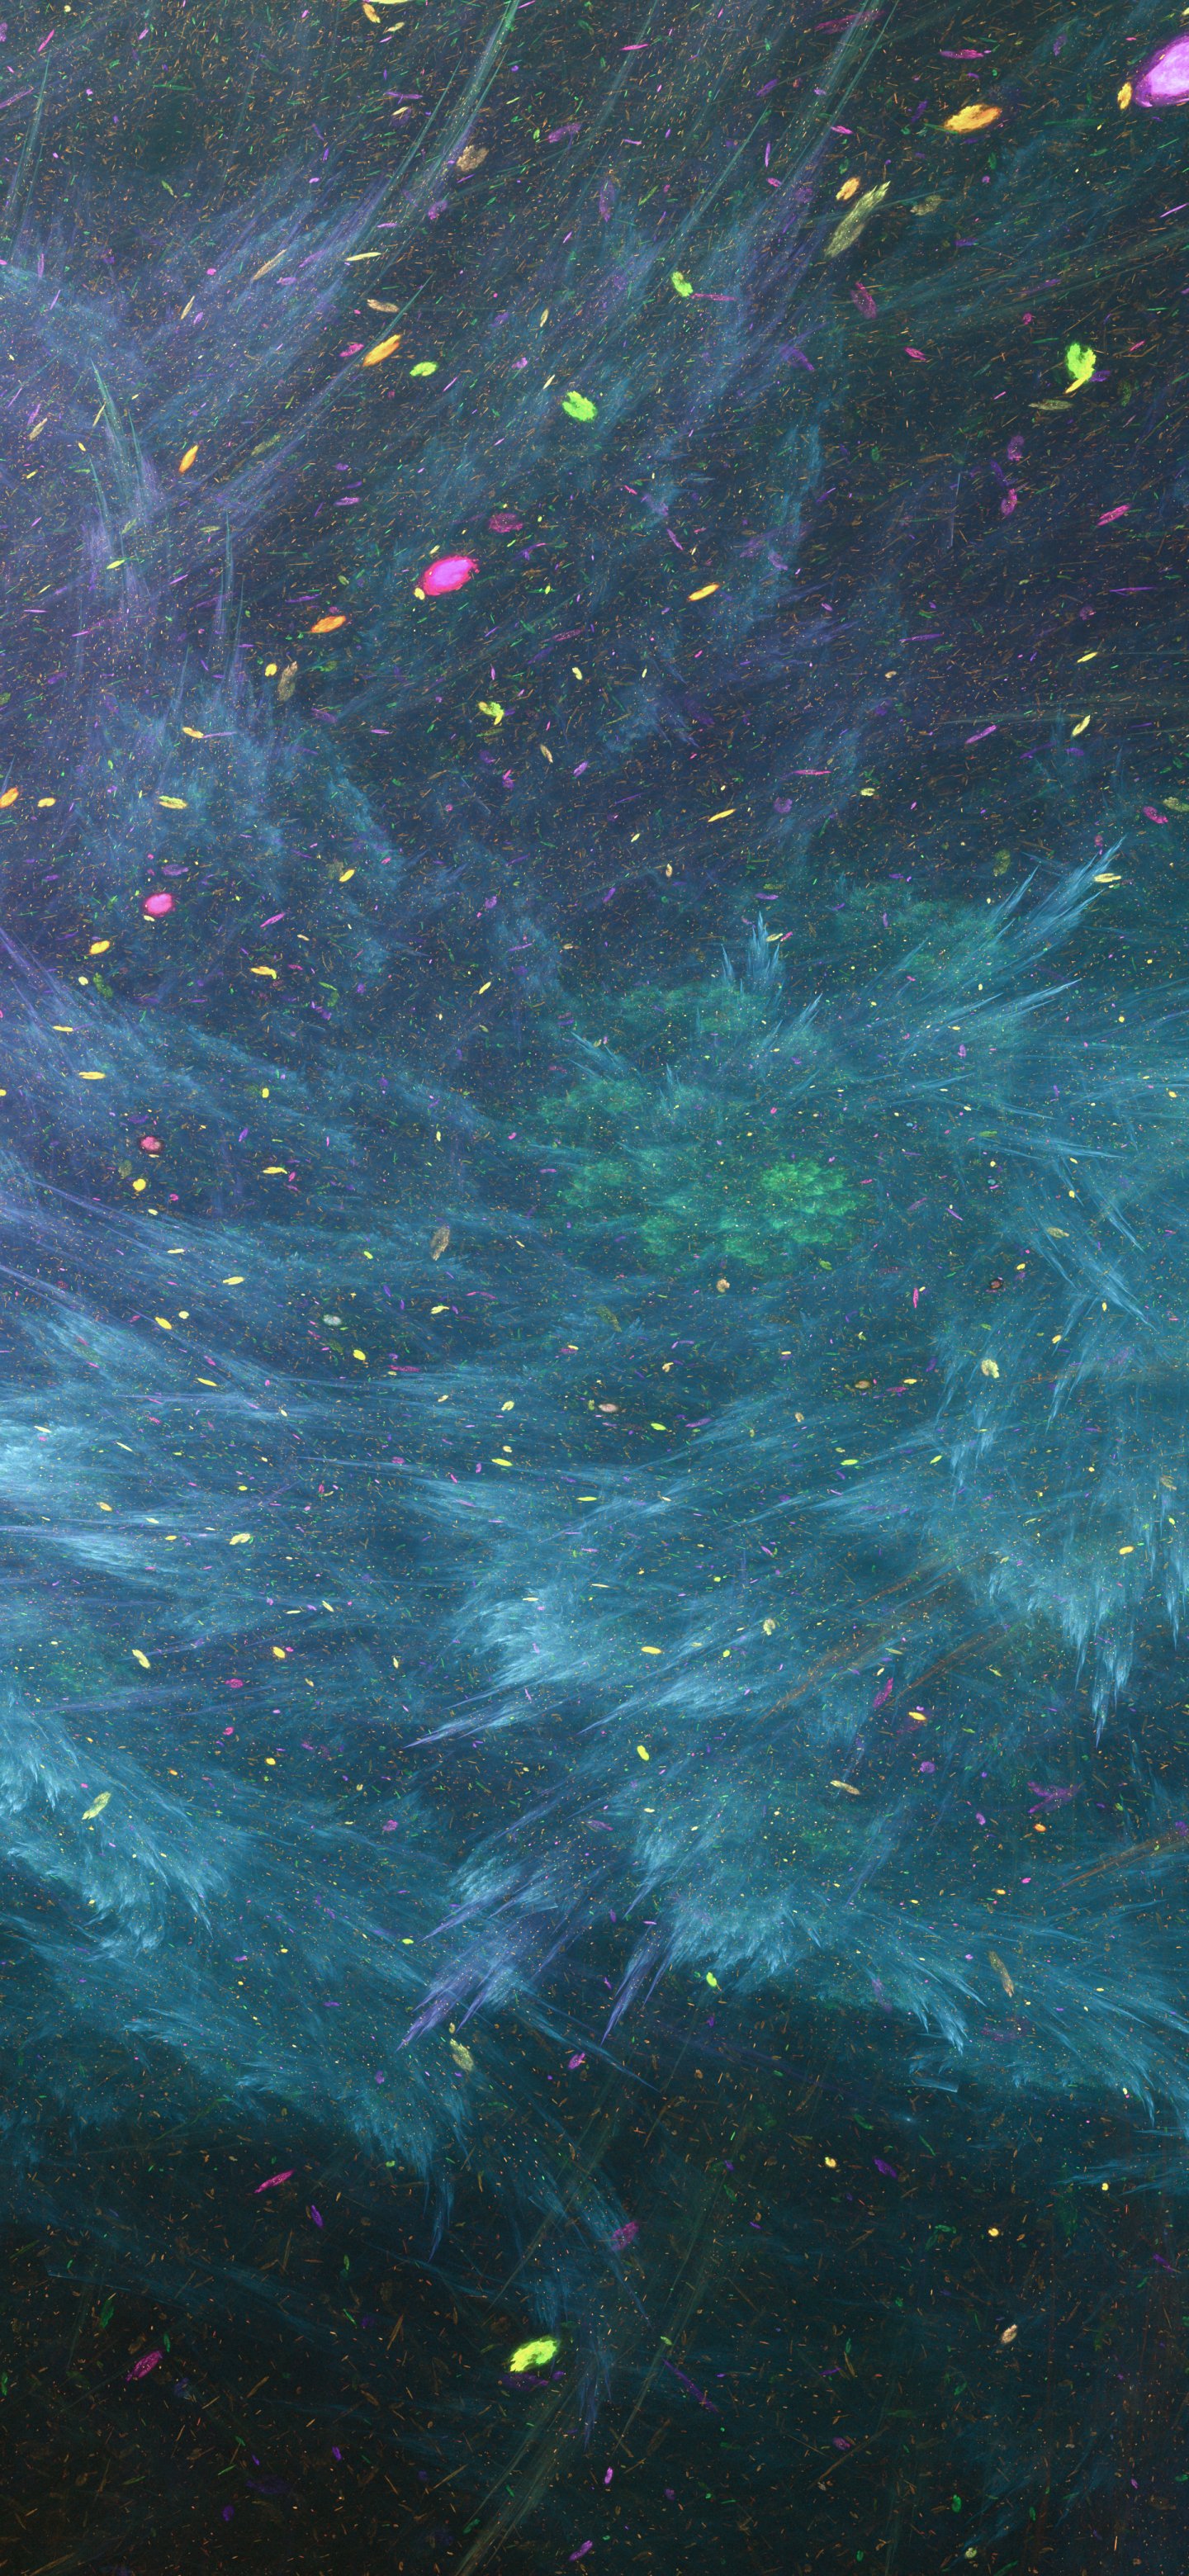 Bộ sưu tập hình nền ảnh vũ trụ (galaxay) đẹp nhất dành cho điện thoại iPhone